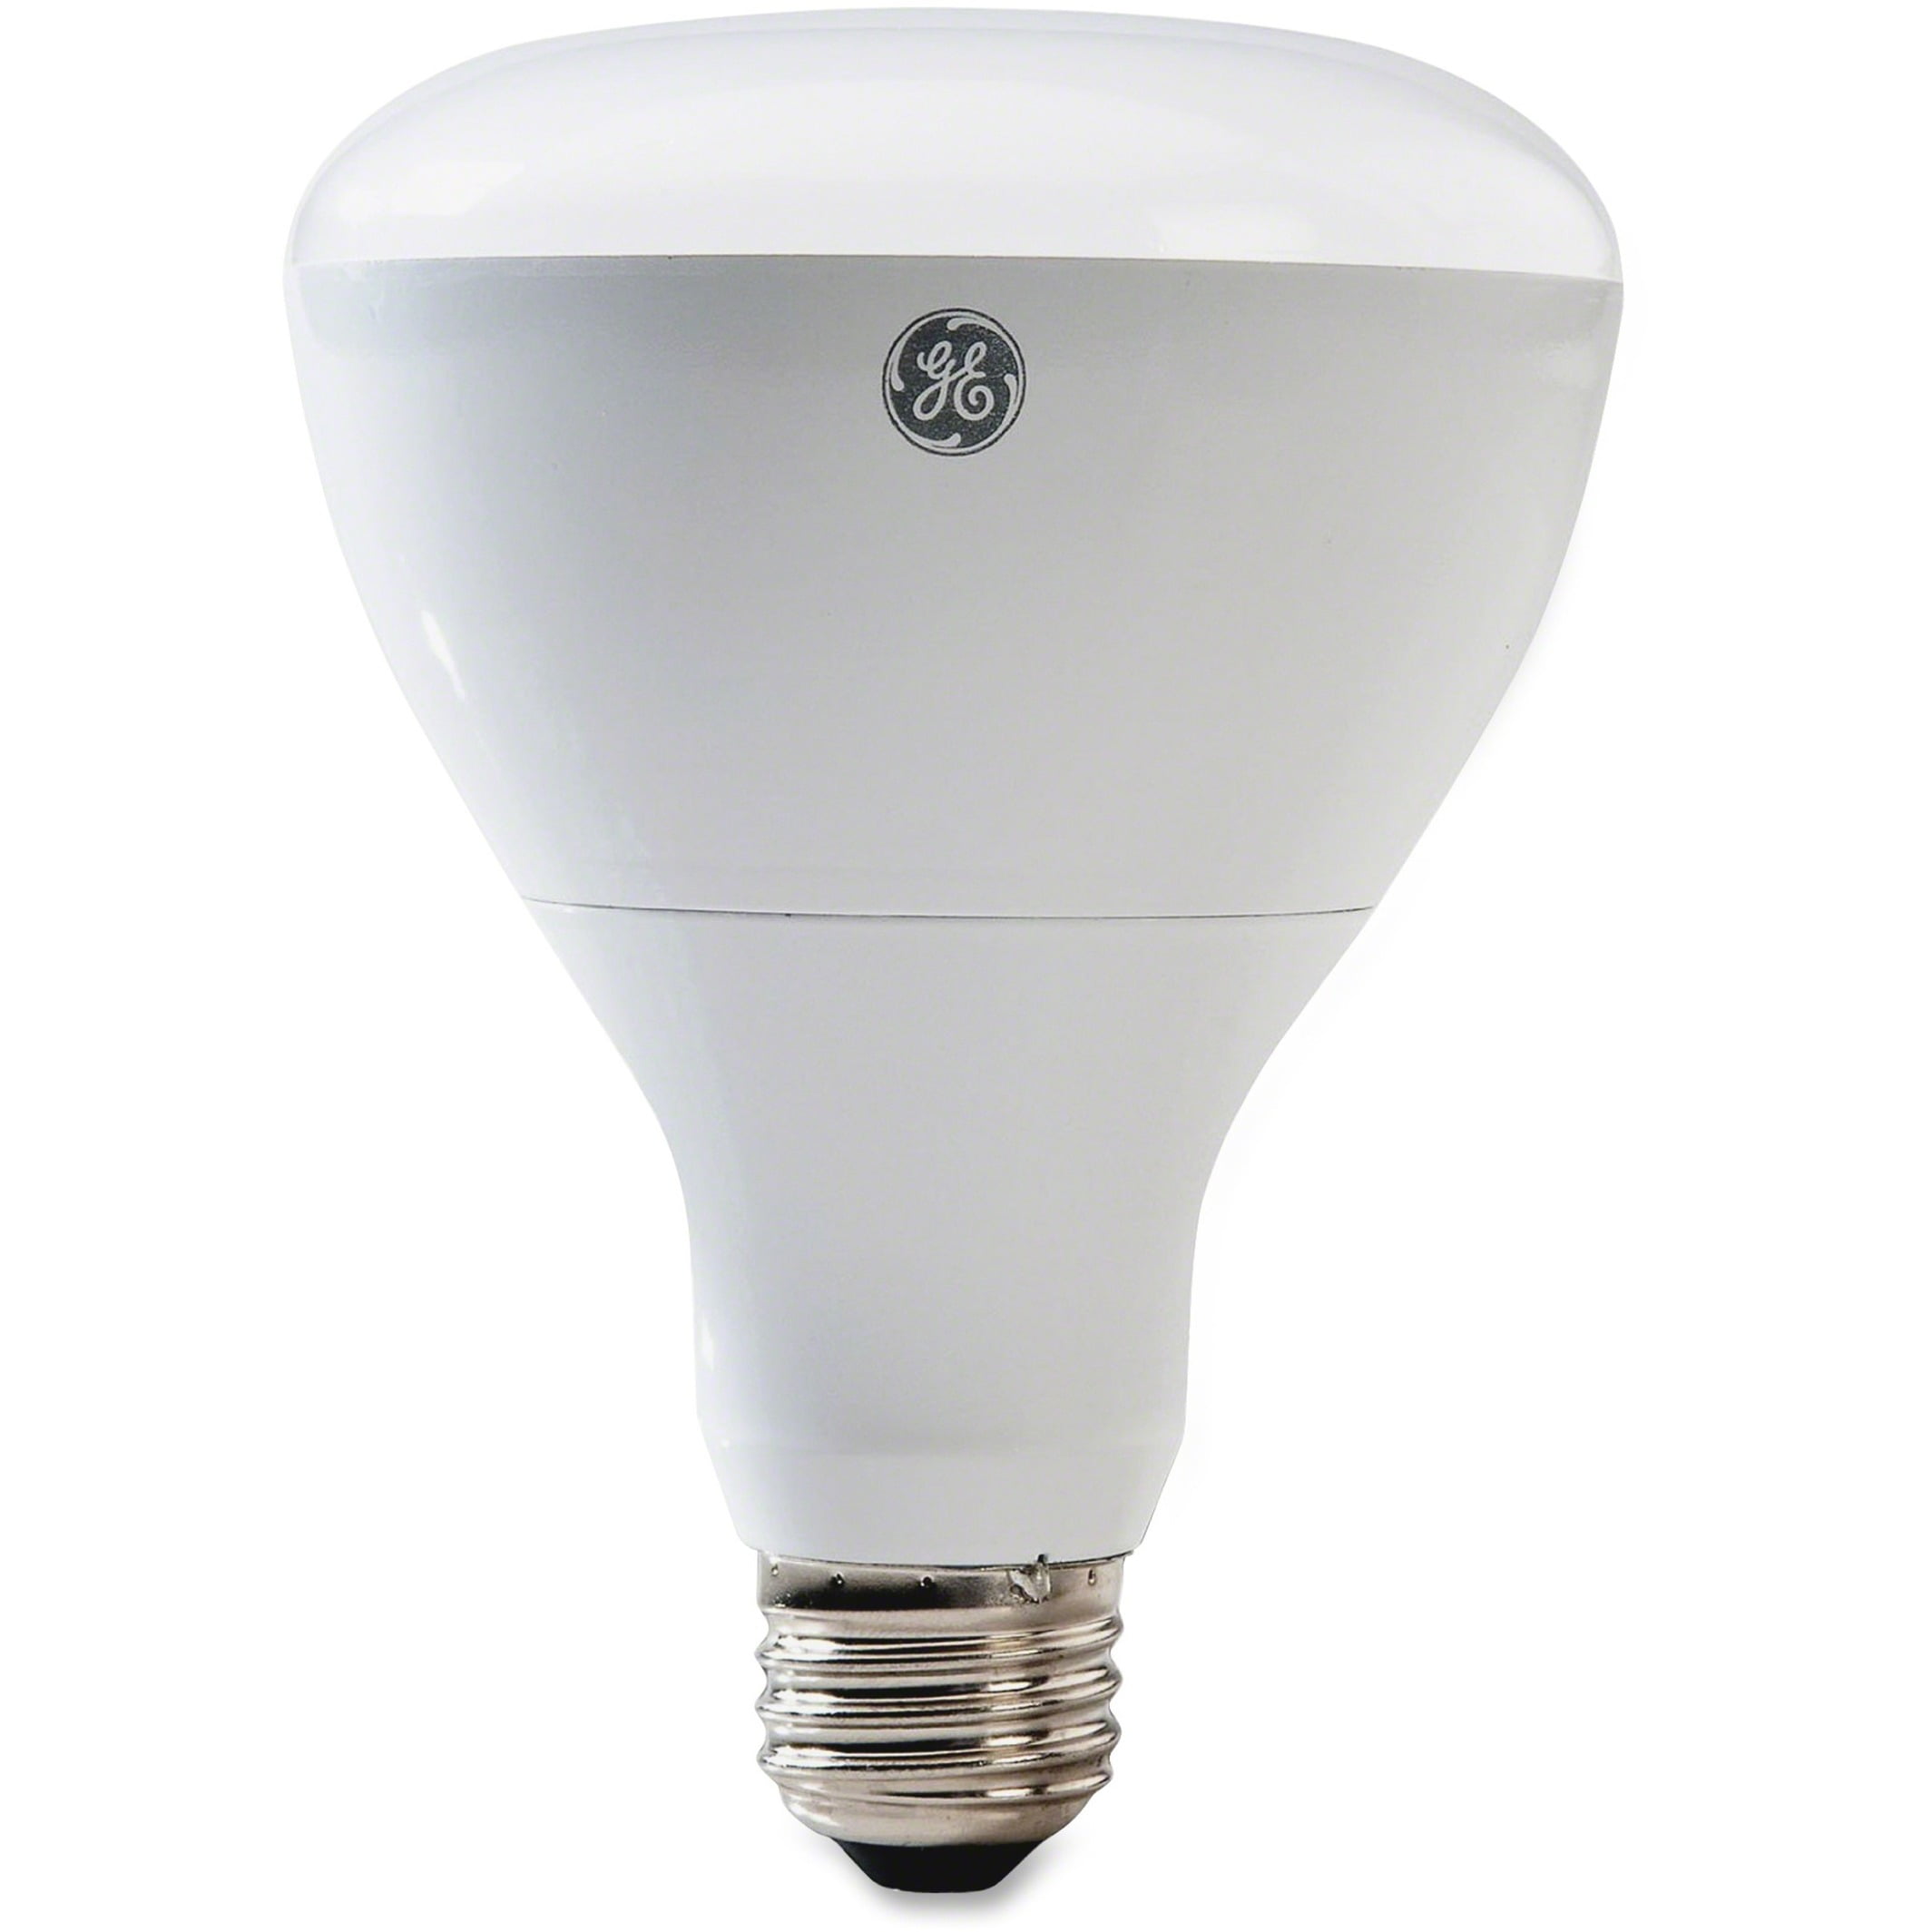 TP Lighting10 x MR11 Halogen Lighting Bulb Lamp 120V 20W MR11-120V-20W-10P 